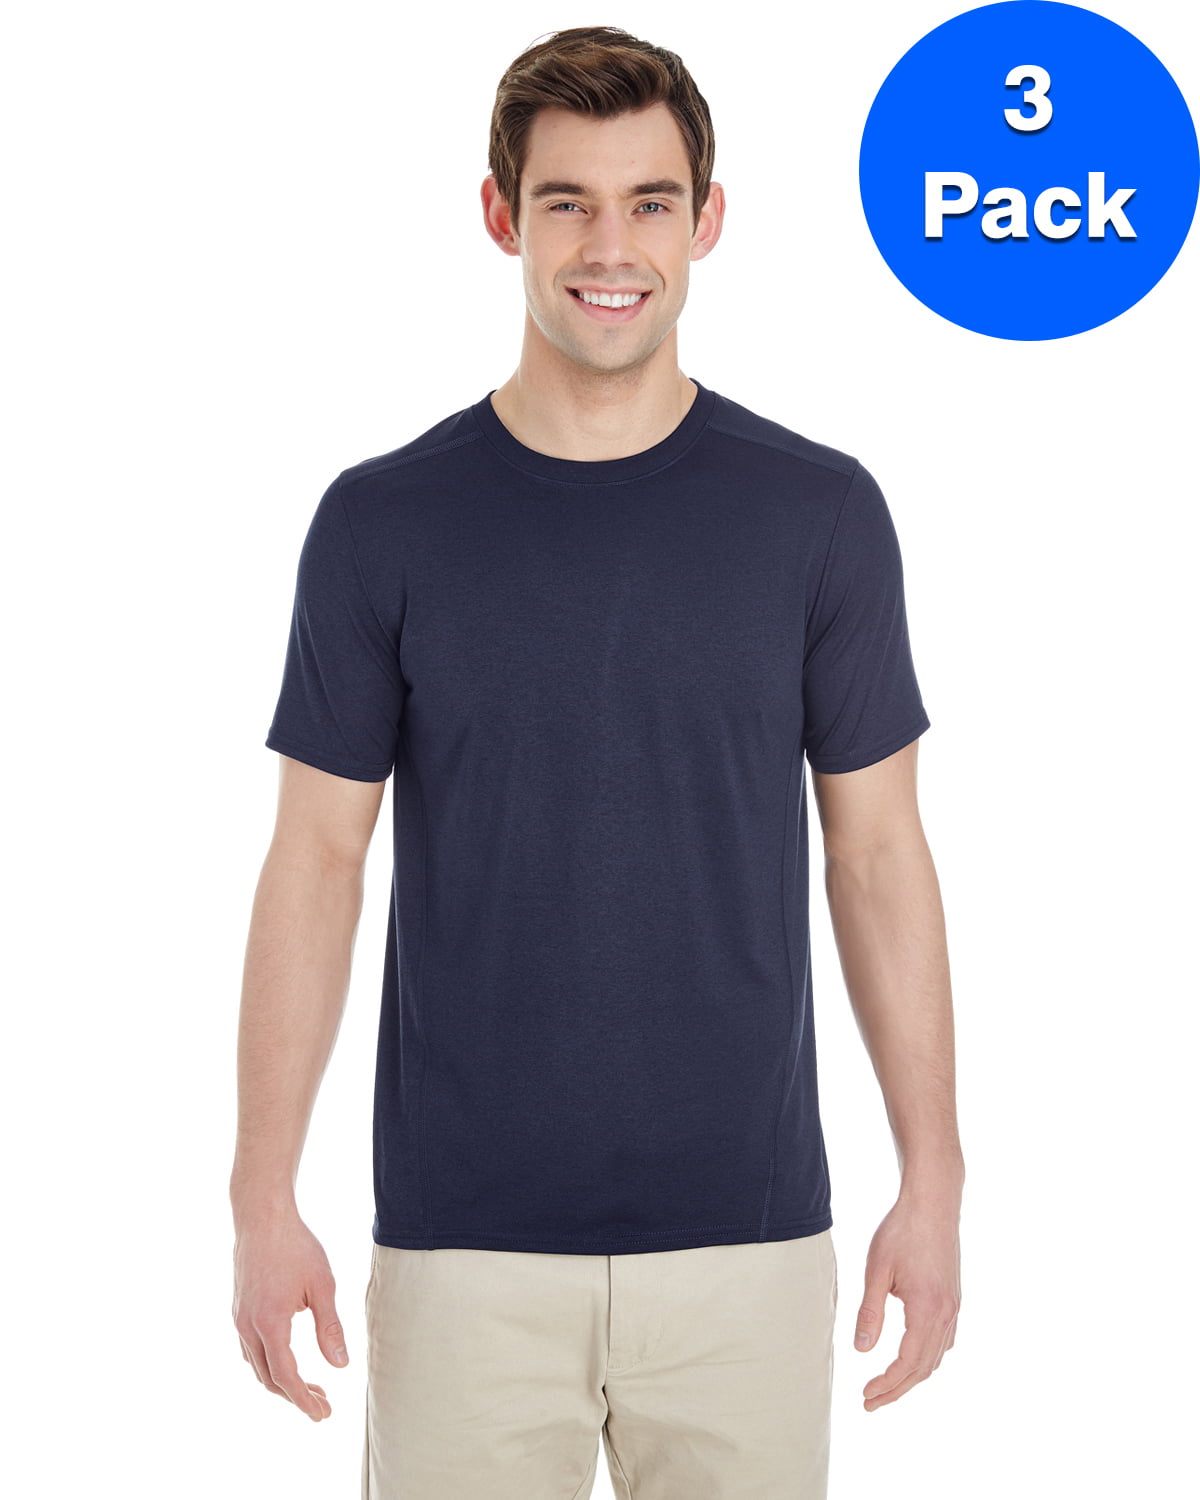 Mens Tech Short-Sleeve T-Shirt 3 Pack - Walmart.com